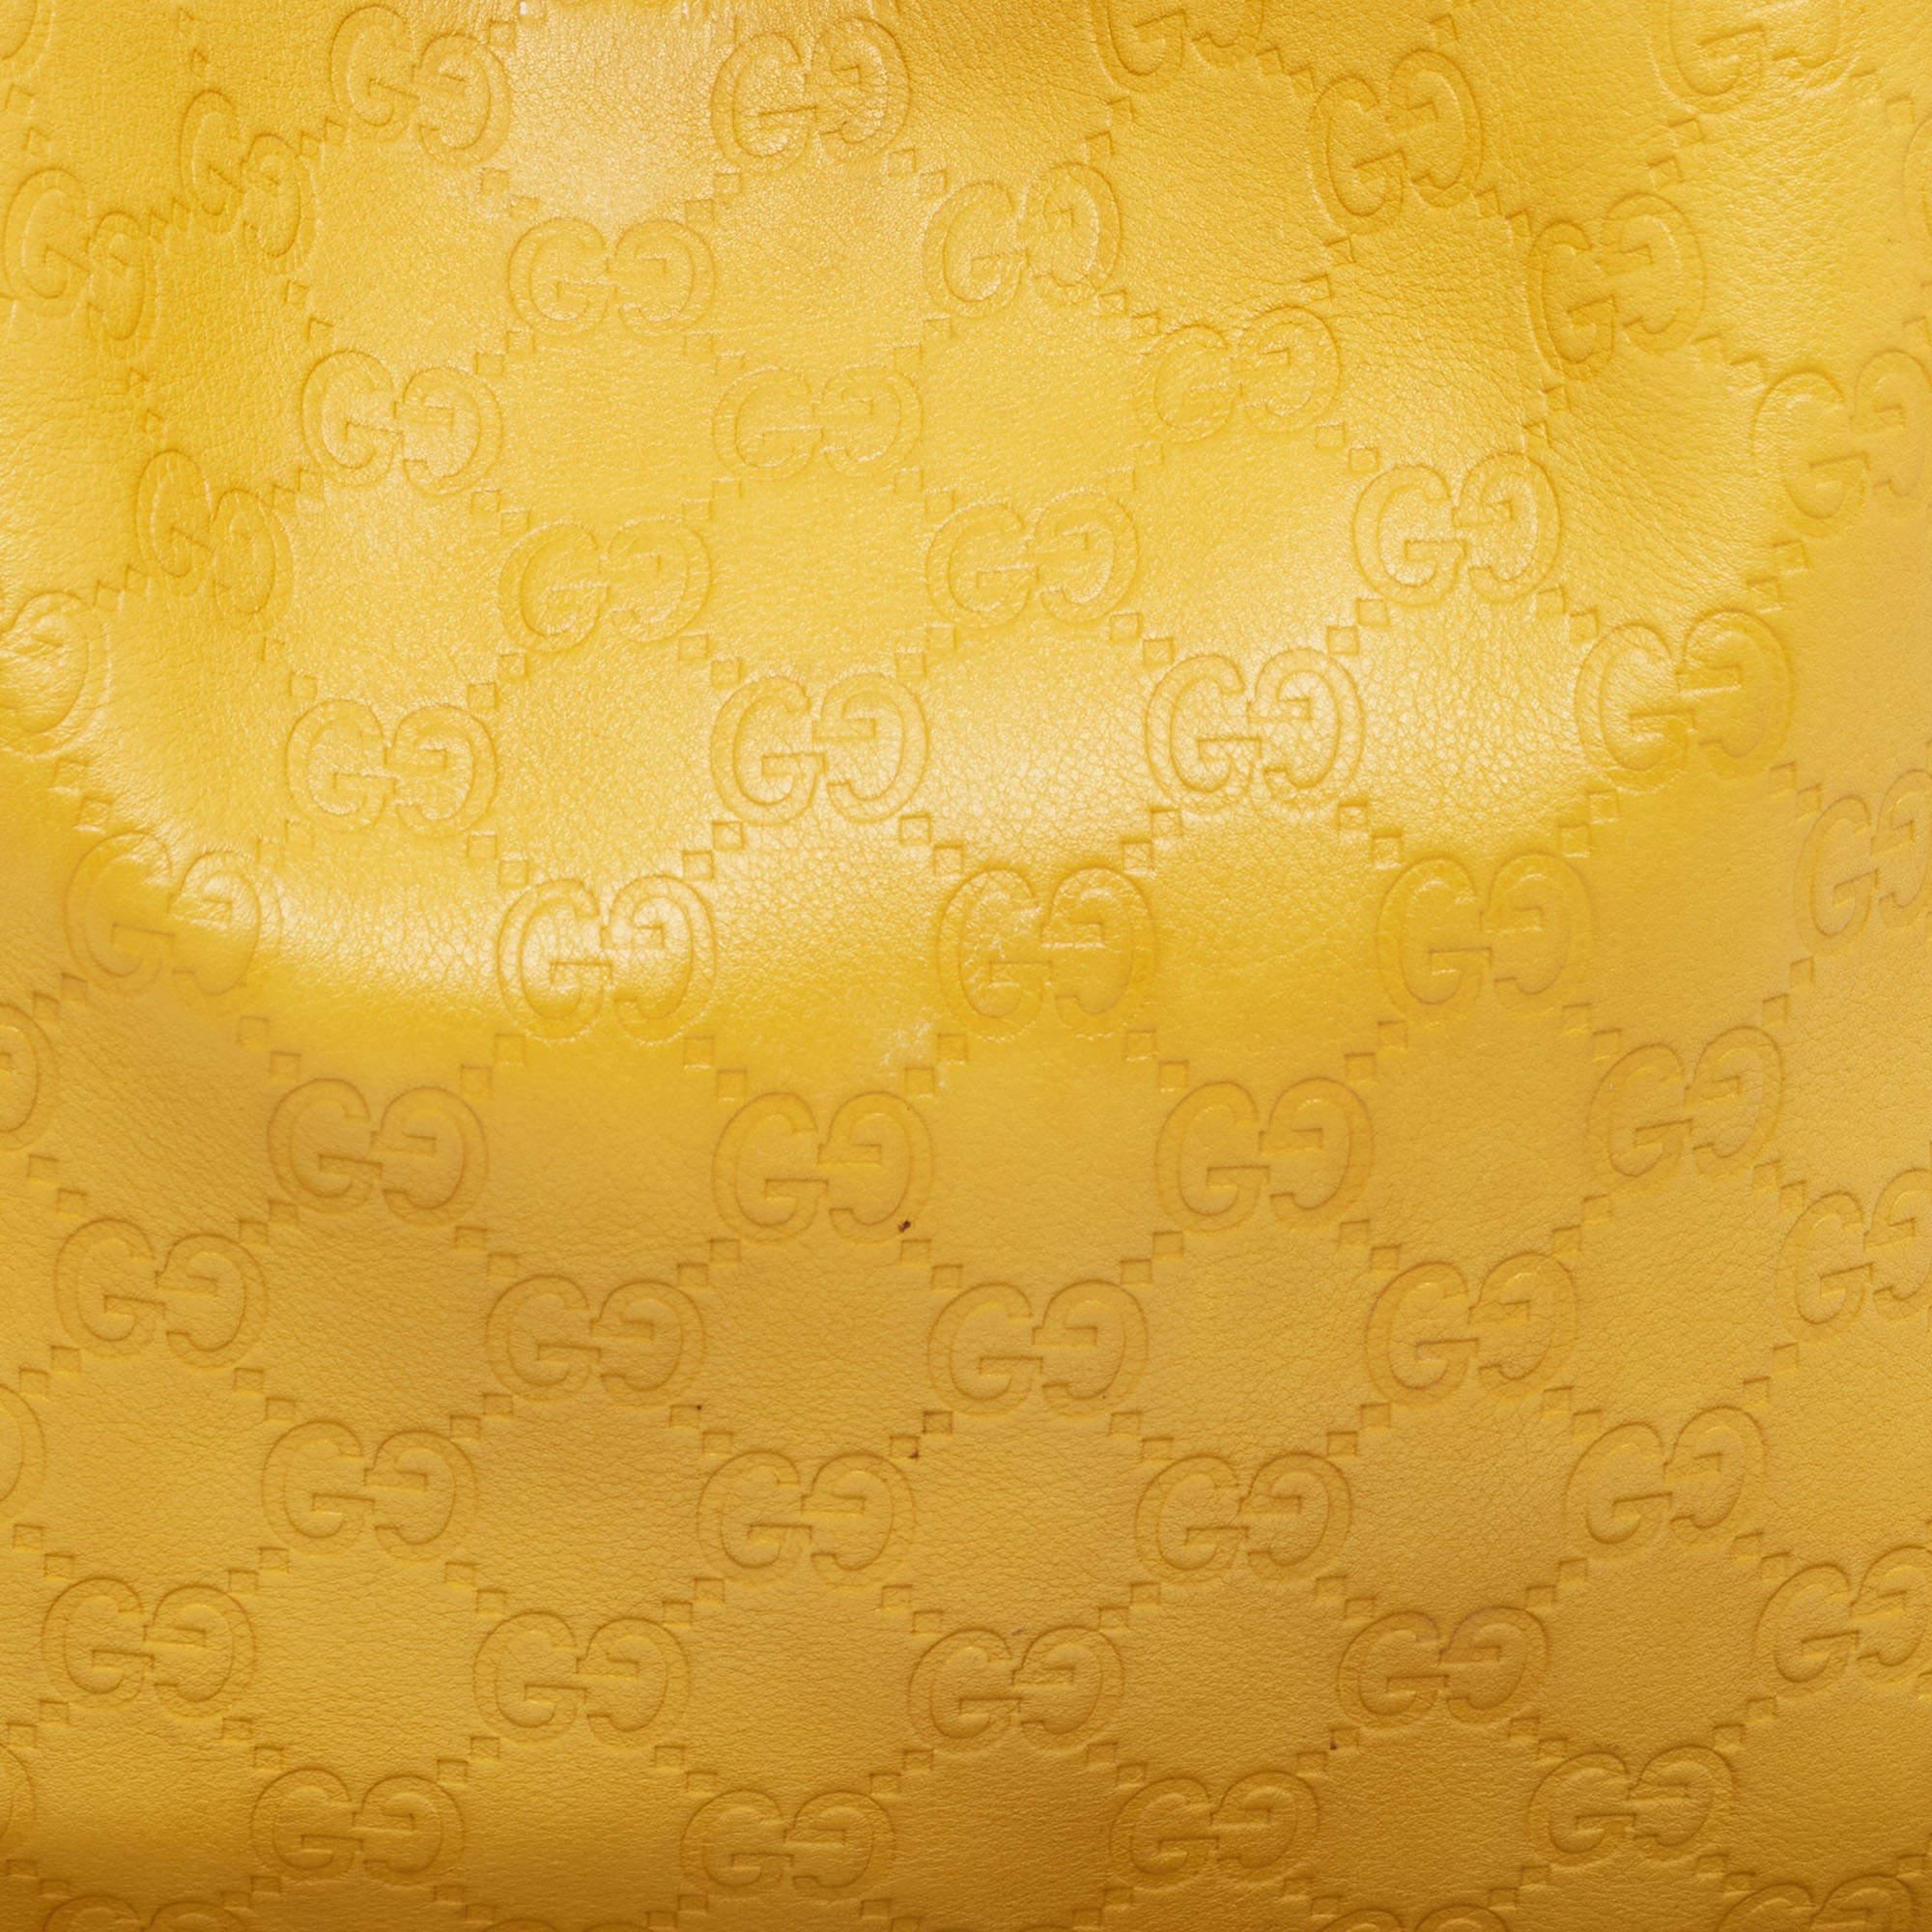 Gucci Yellow Guccissima Leather Medium Britt Hobo 2